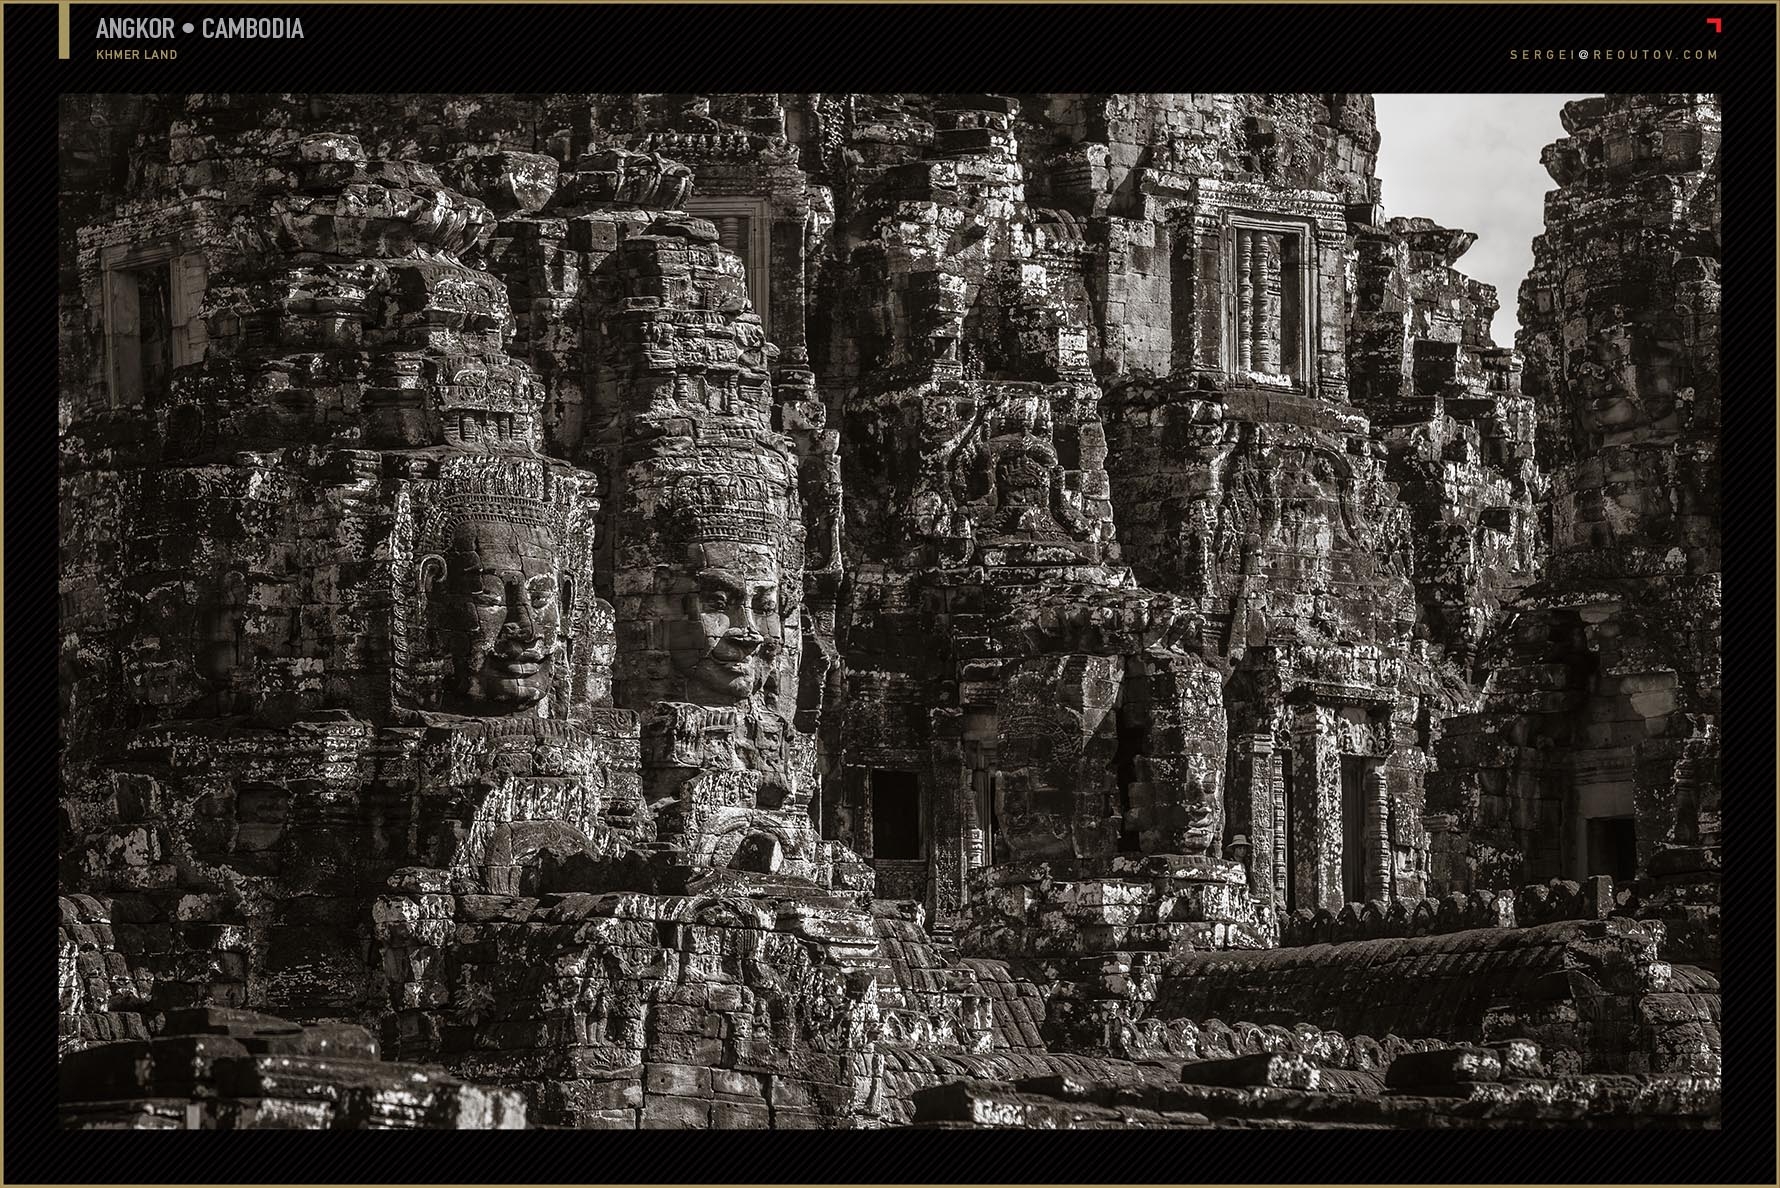 Bayon temple Angkor Wat in Cambodia